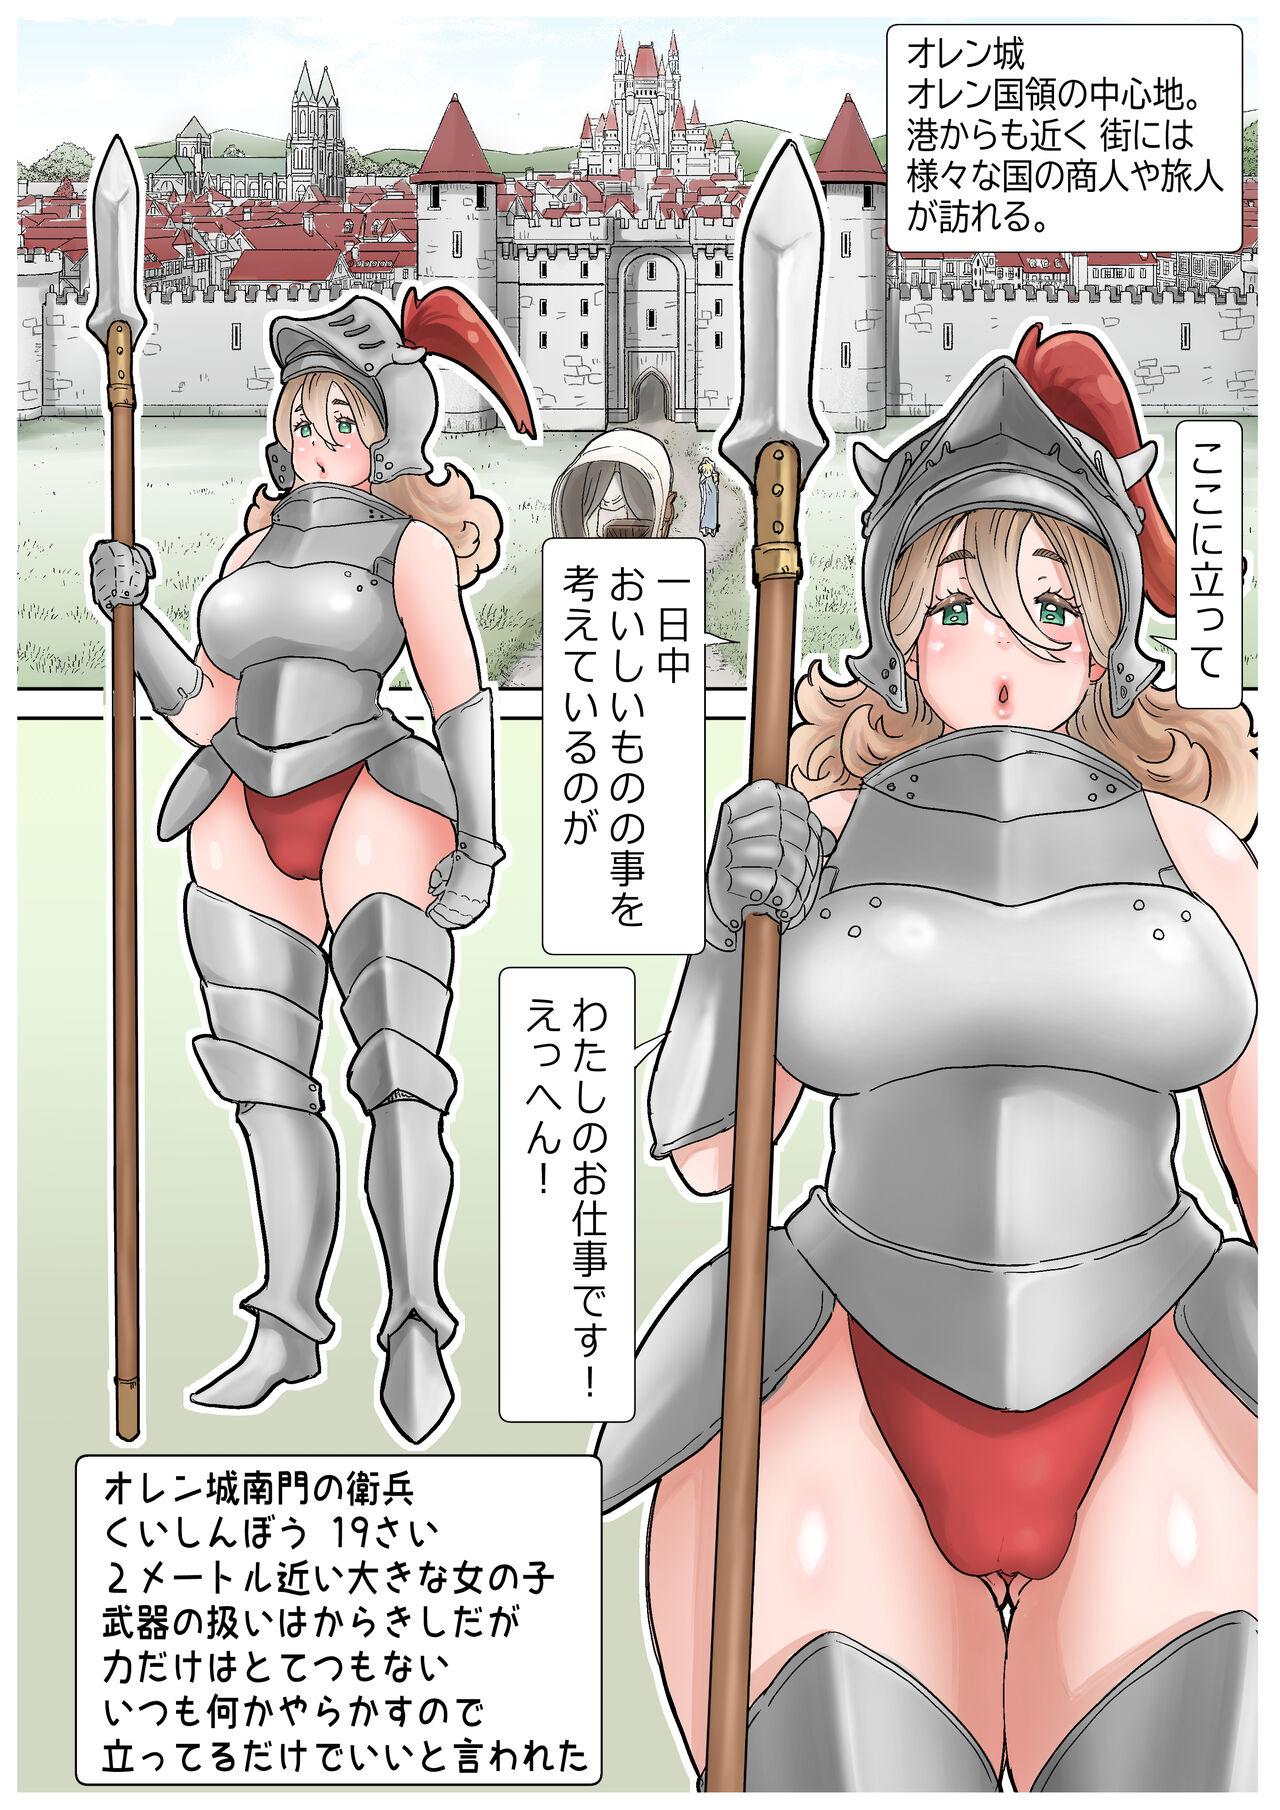 [tsubame] RPG girls ❤︎ [NPC kan no shou] 1 9